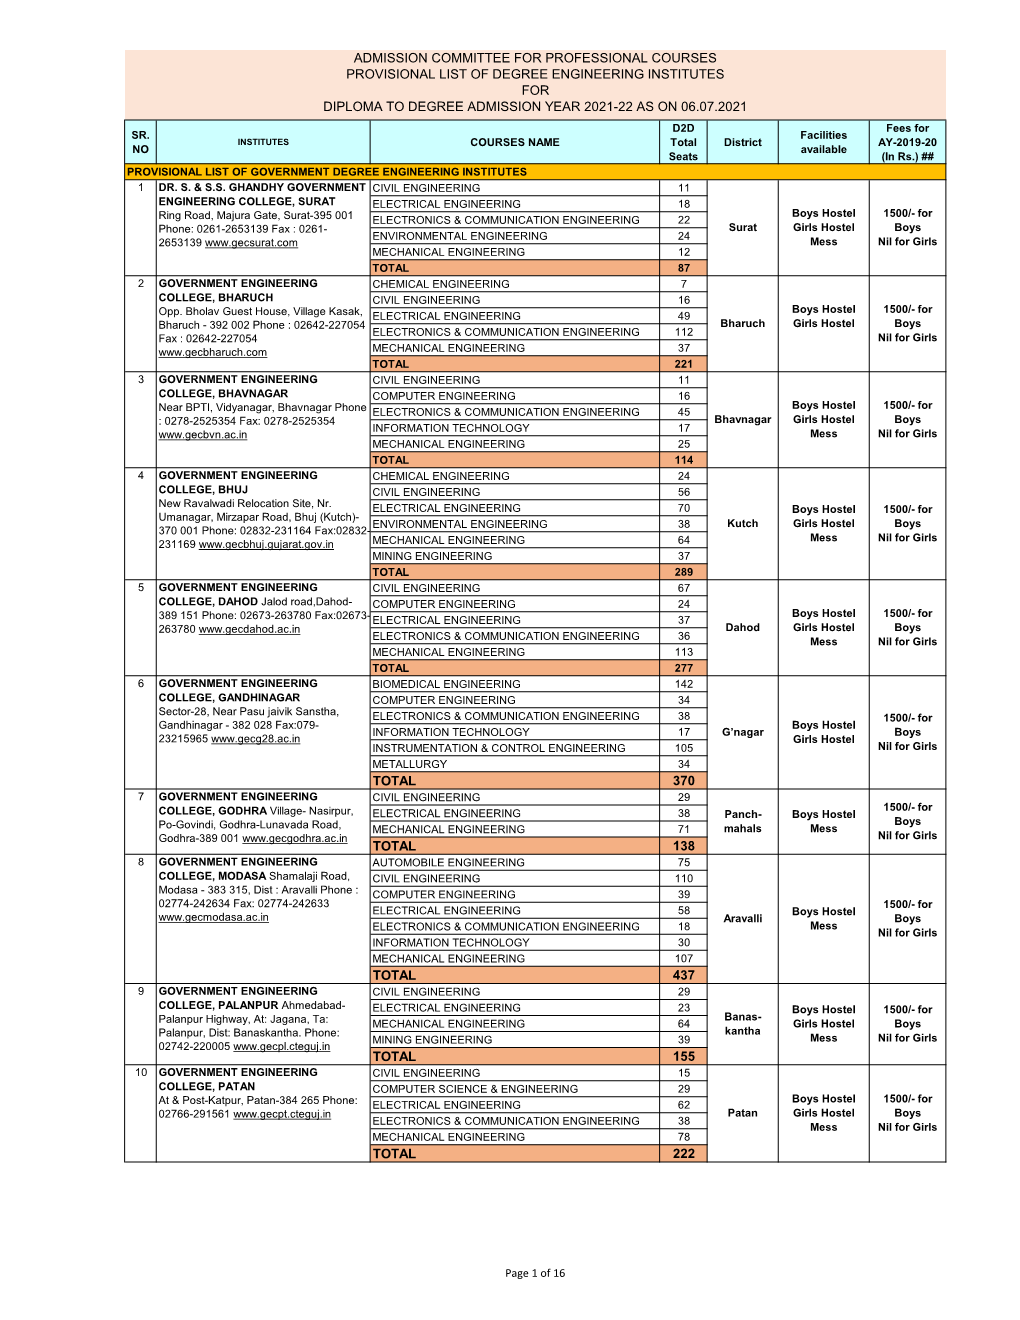 Provisional List of Institutes